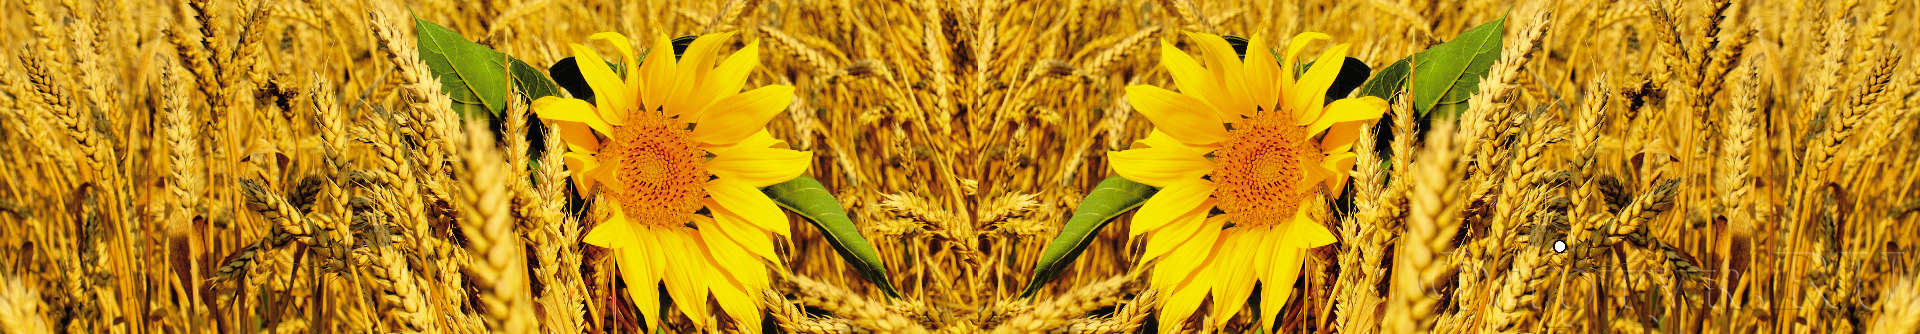 Подсолнухи в пшенице